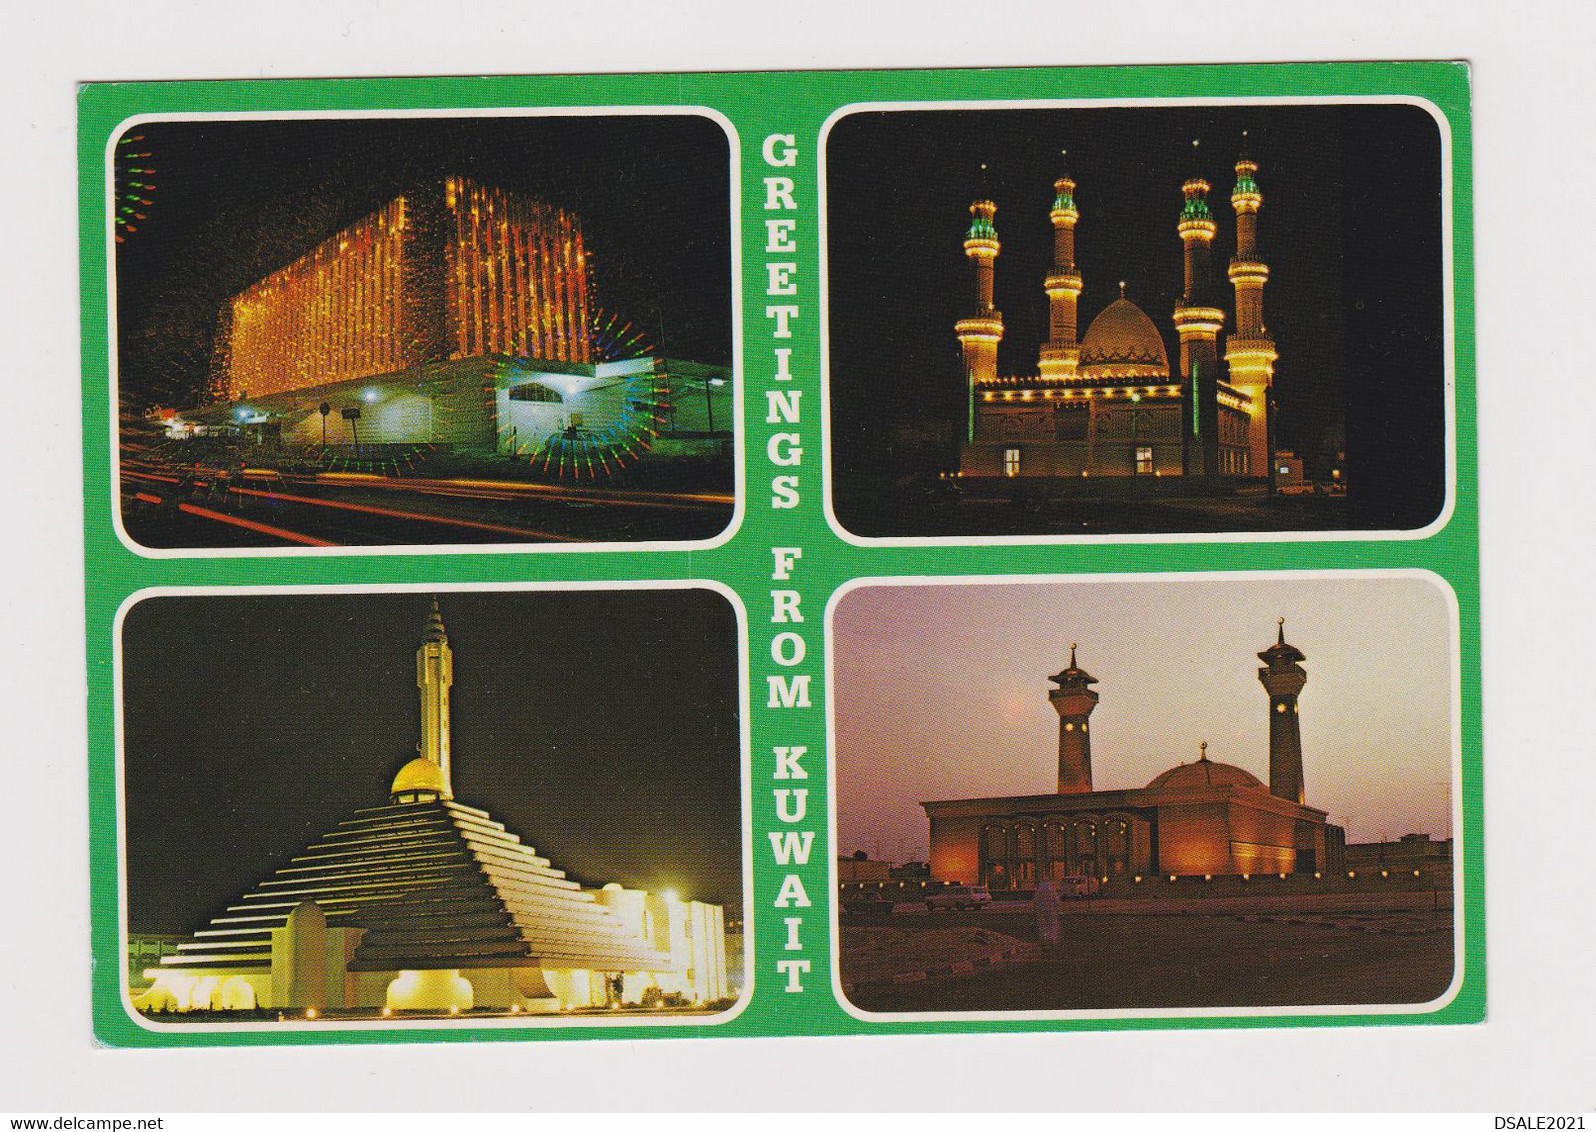 KUWAIT Three Big Mosque Night View Vintage Photo Postcard (53271) - Kuwait